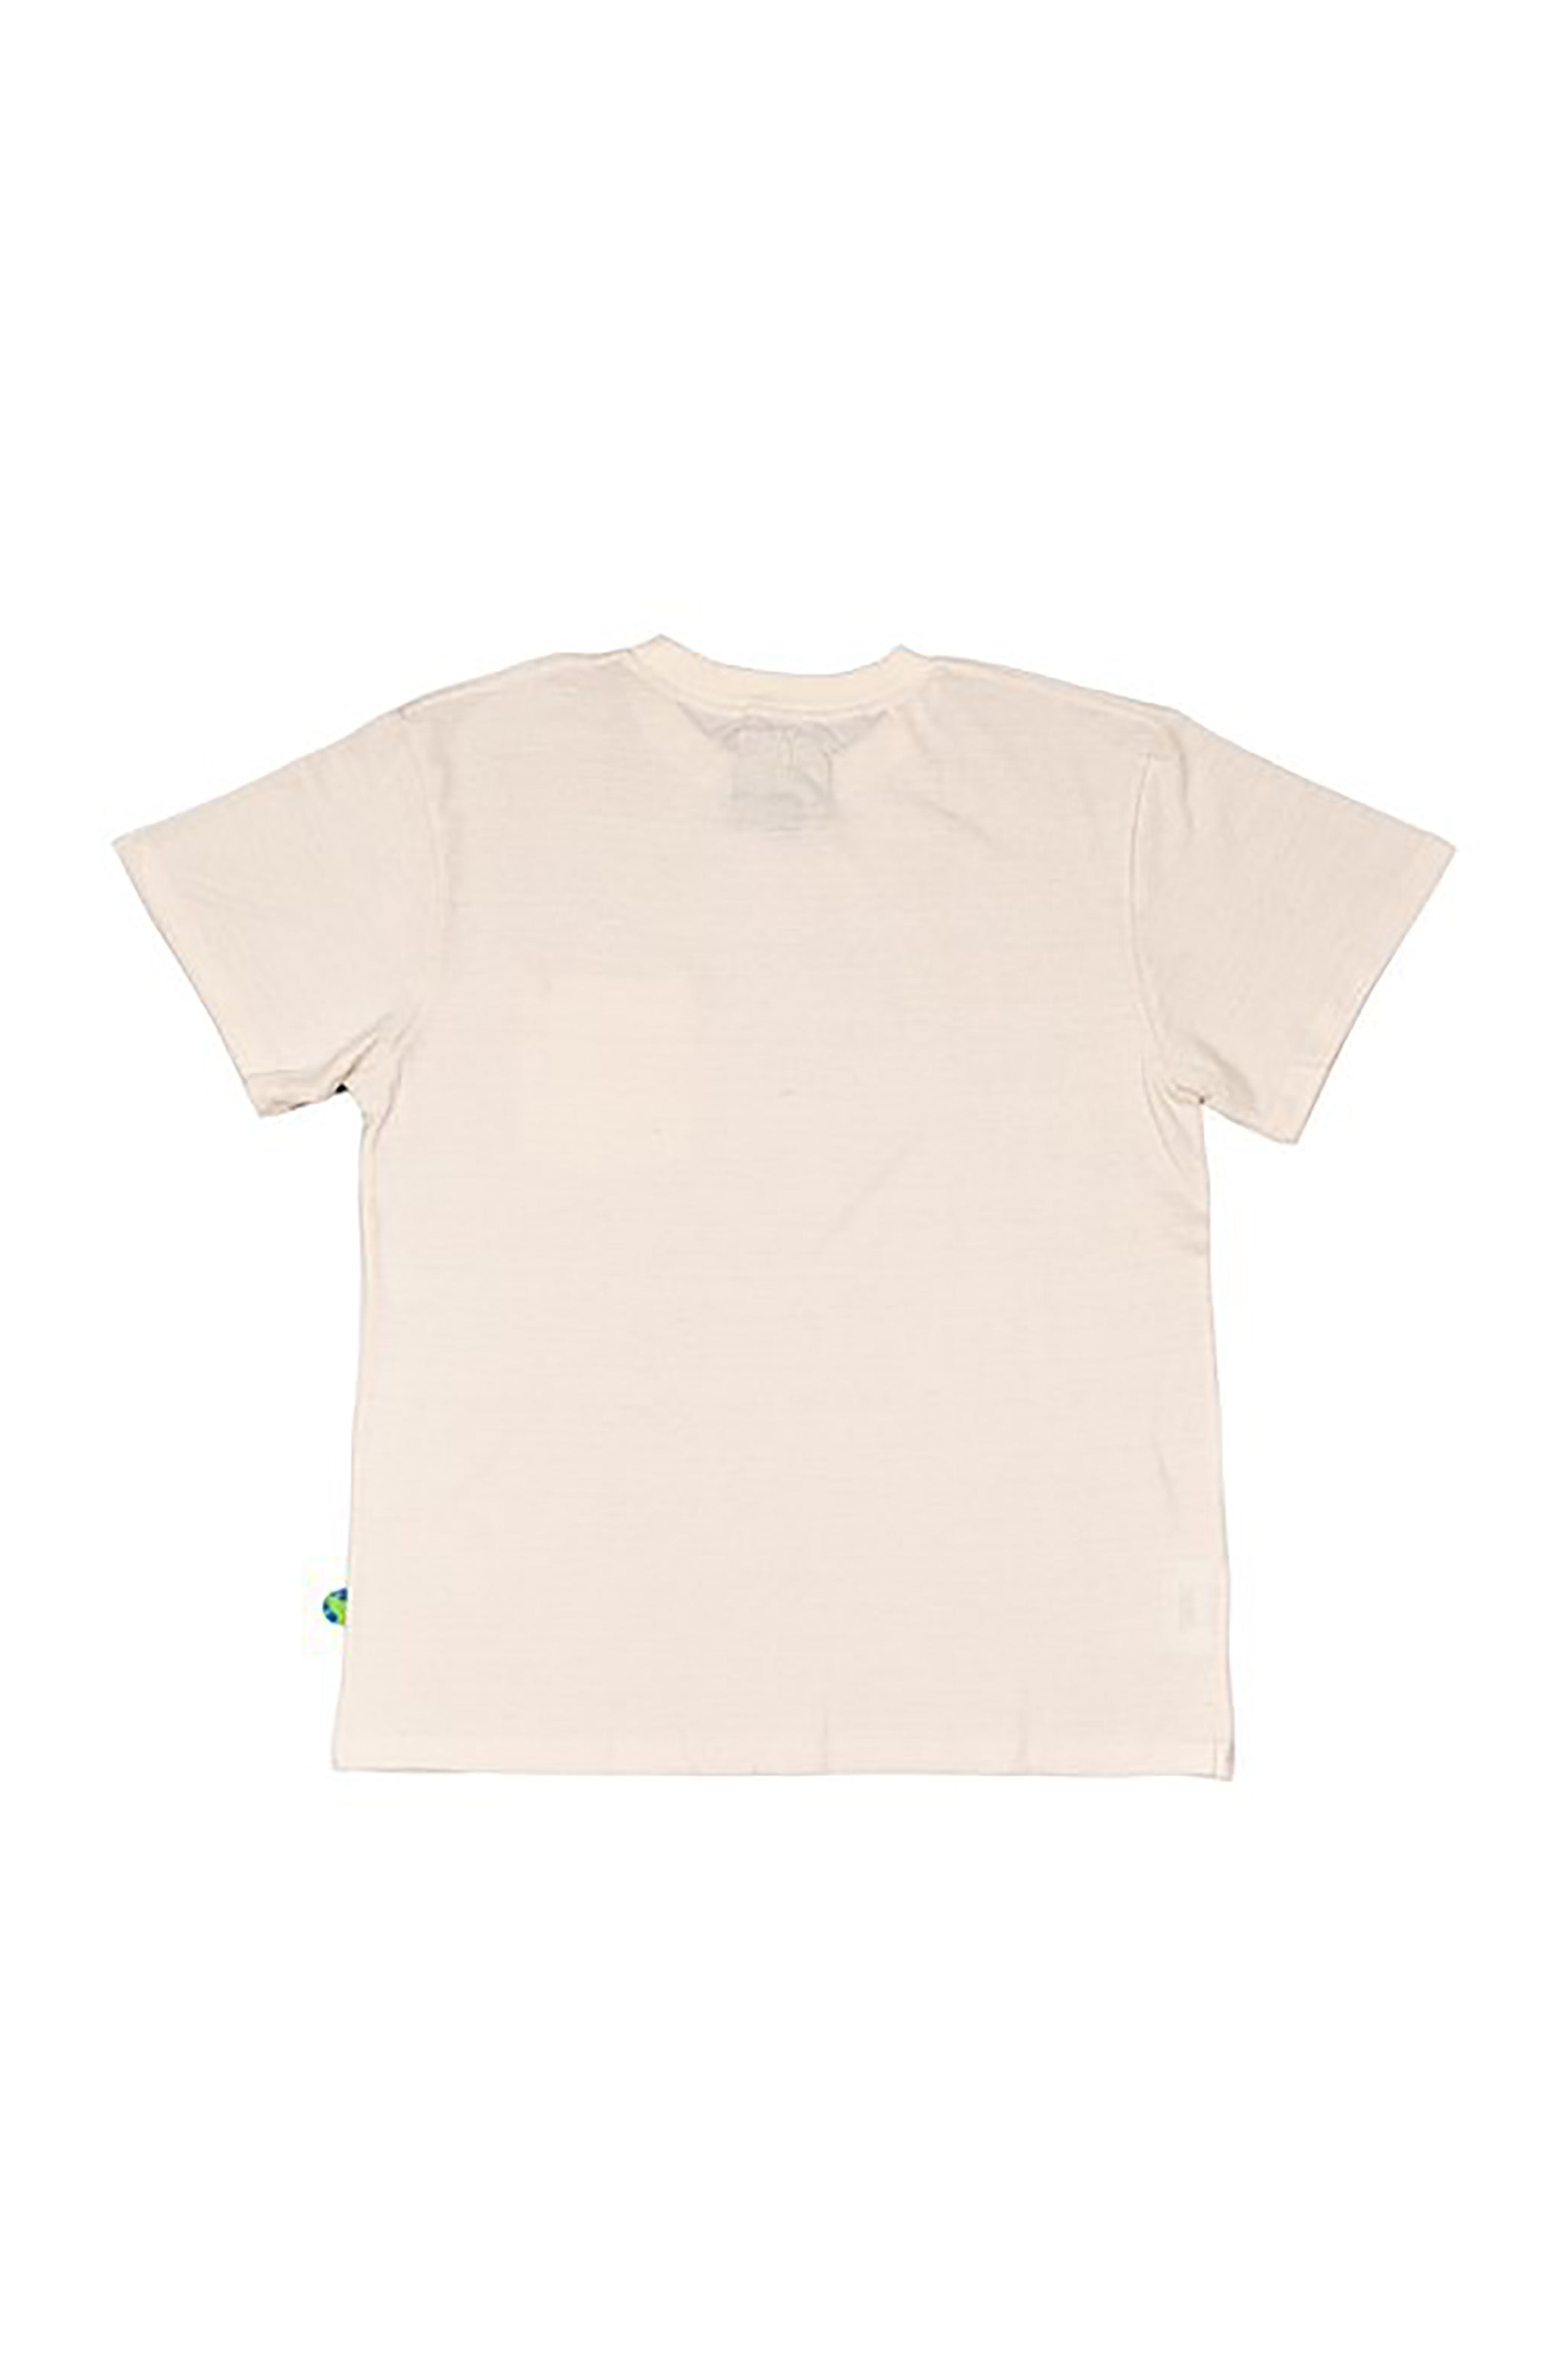 Mister Green - World Piece Standard Pocket T-Shirt